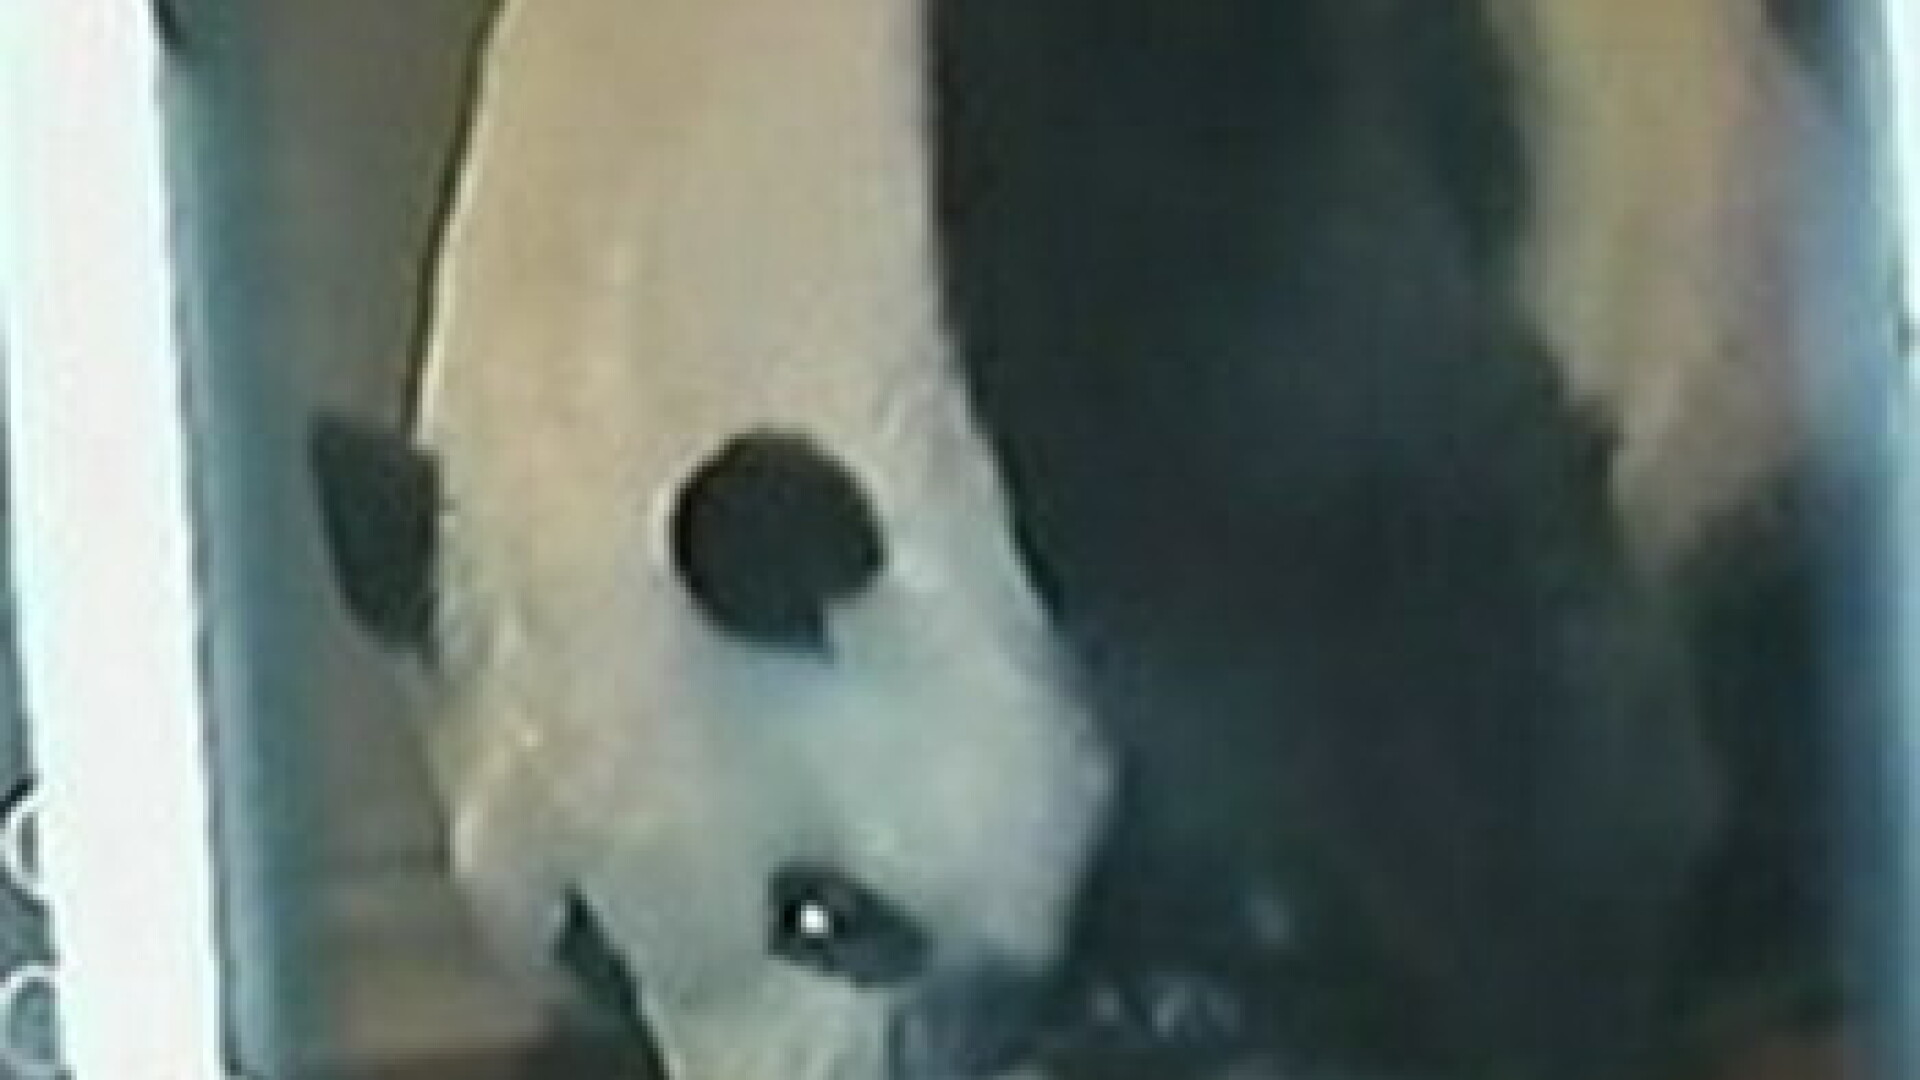 Un urs de panda urias, filmat in timp ce a nascut